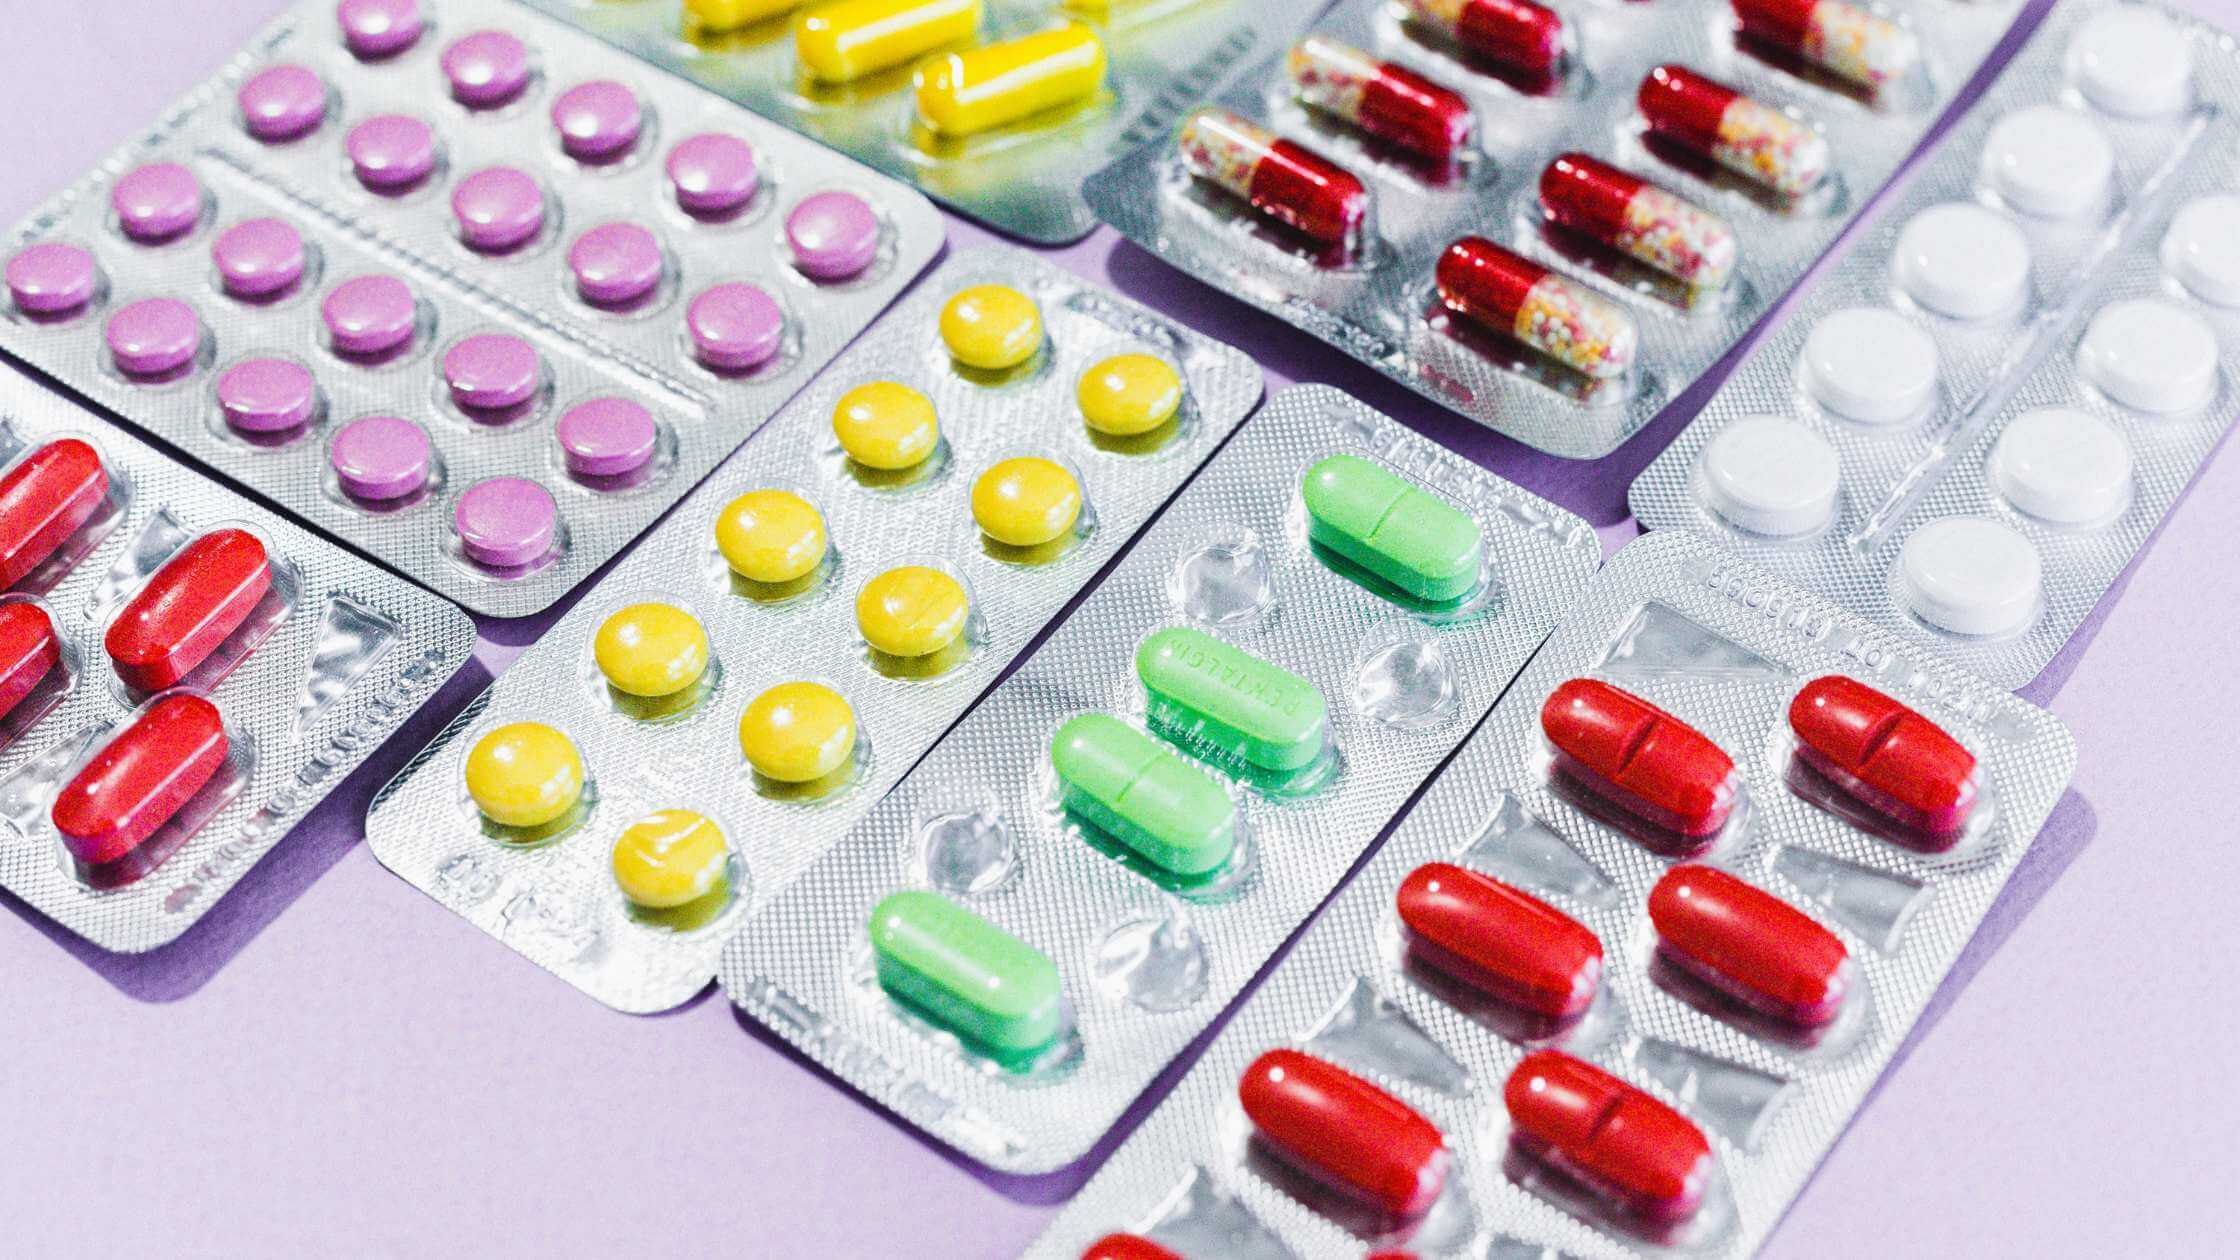 Propilenglicol farmacéutico: ¿Qué es y para qué se usa?